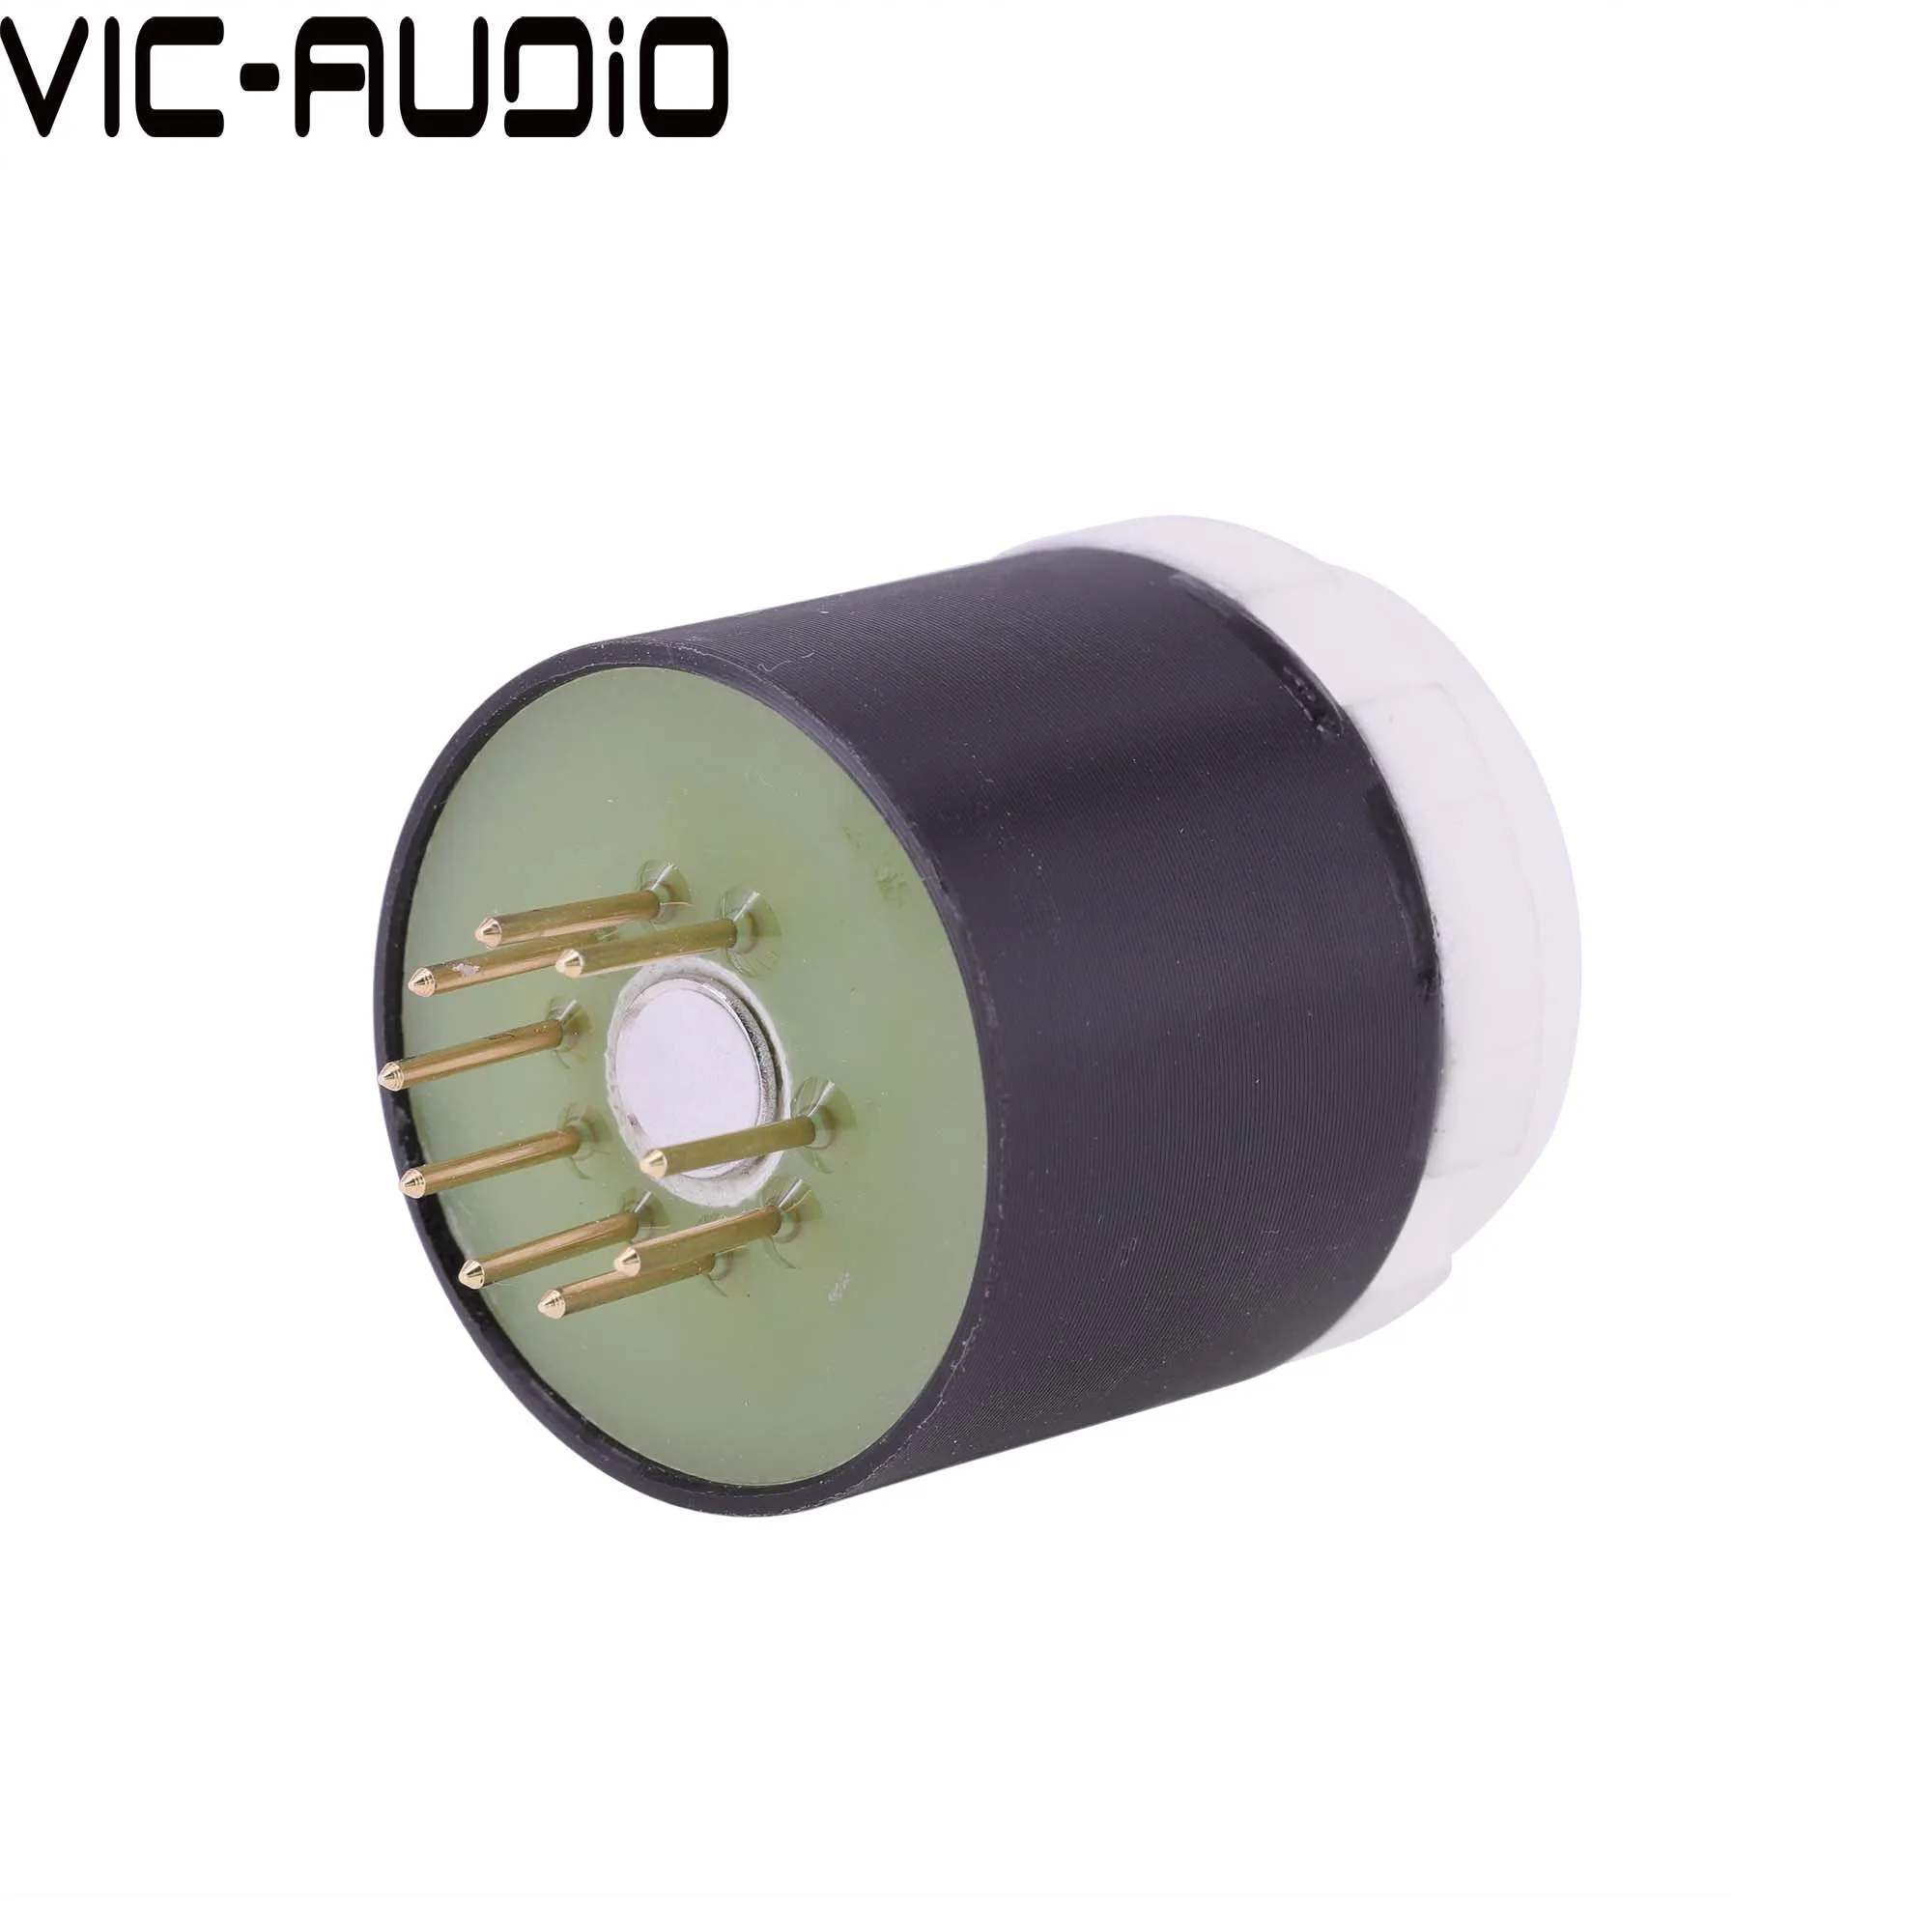 Amplifier Vakuumrohr CV181 6SL7 6N8P 6N9P 6SN7 bis E88CC ECC88 6DJ8 6N2 6922 DIY Audio Vakuum -Rohr -Verstärker -Verstärker -Konvertier -Sockeladapter